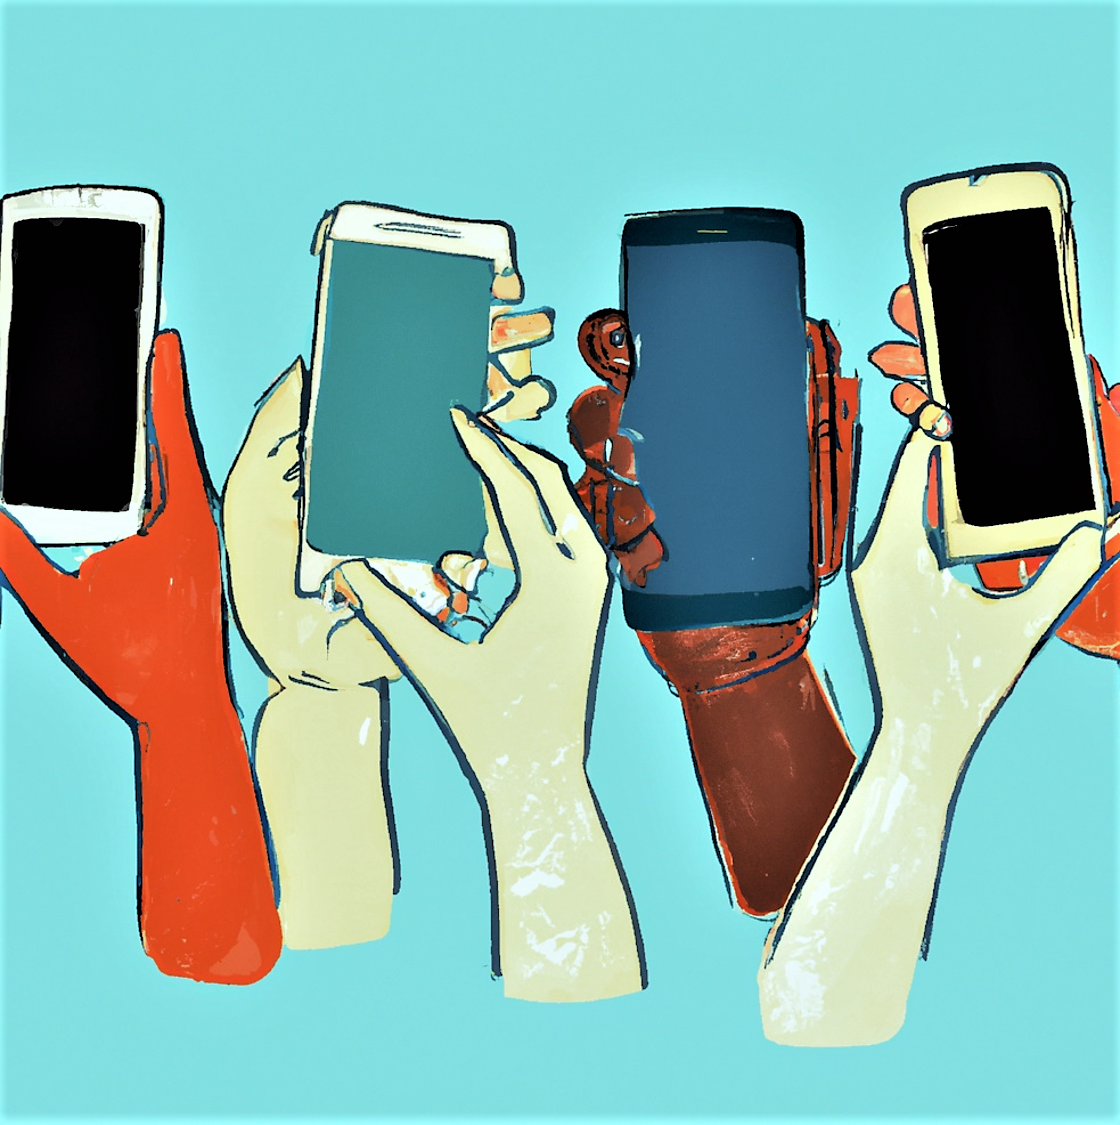 En illustrasjon av hender som holder smarttelefoner